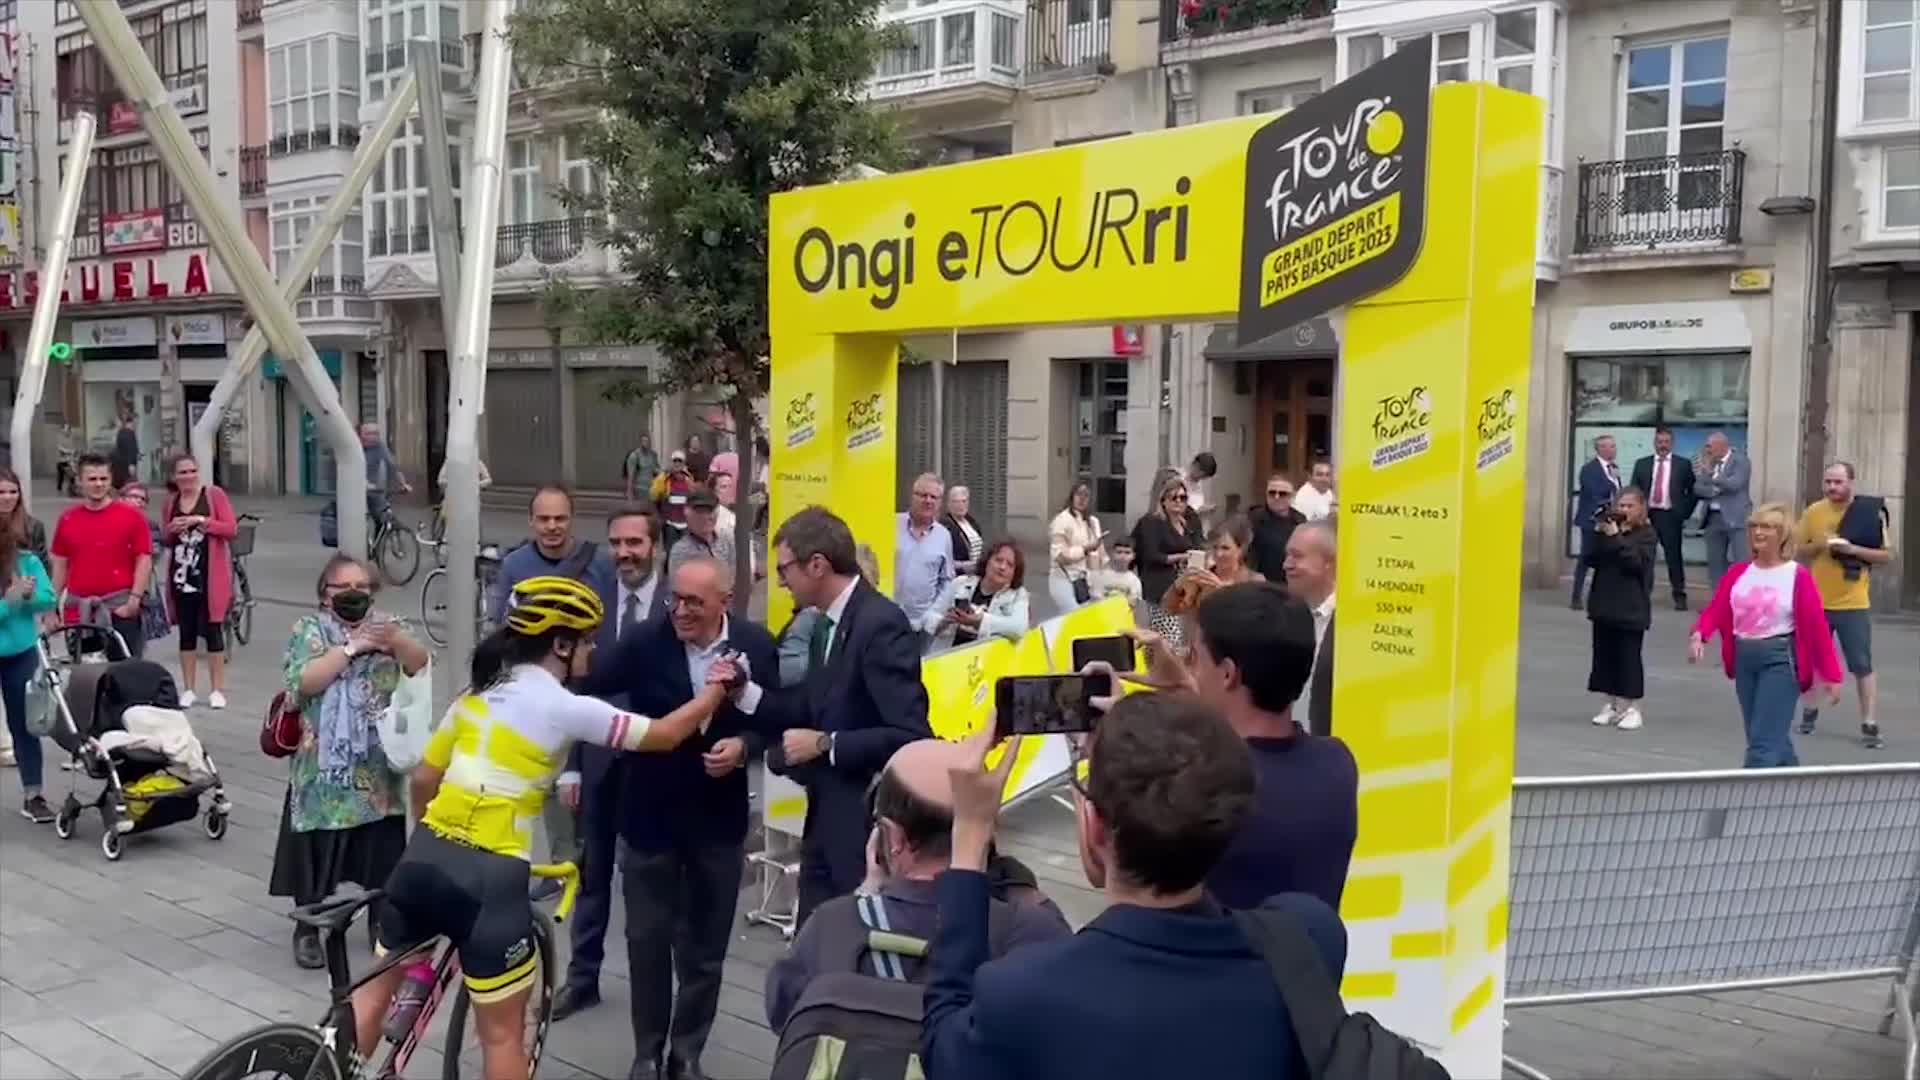 Euskal Herrian da Frantziako Tourraren lekukoa